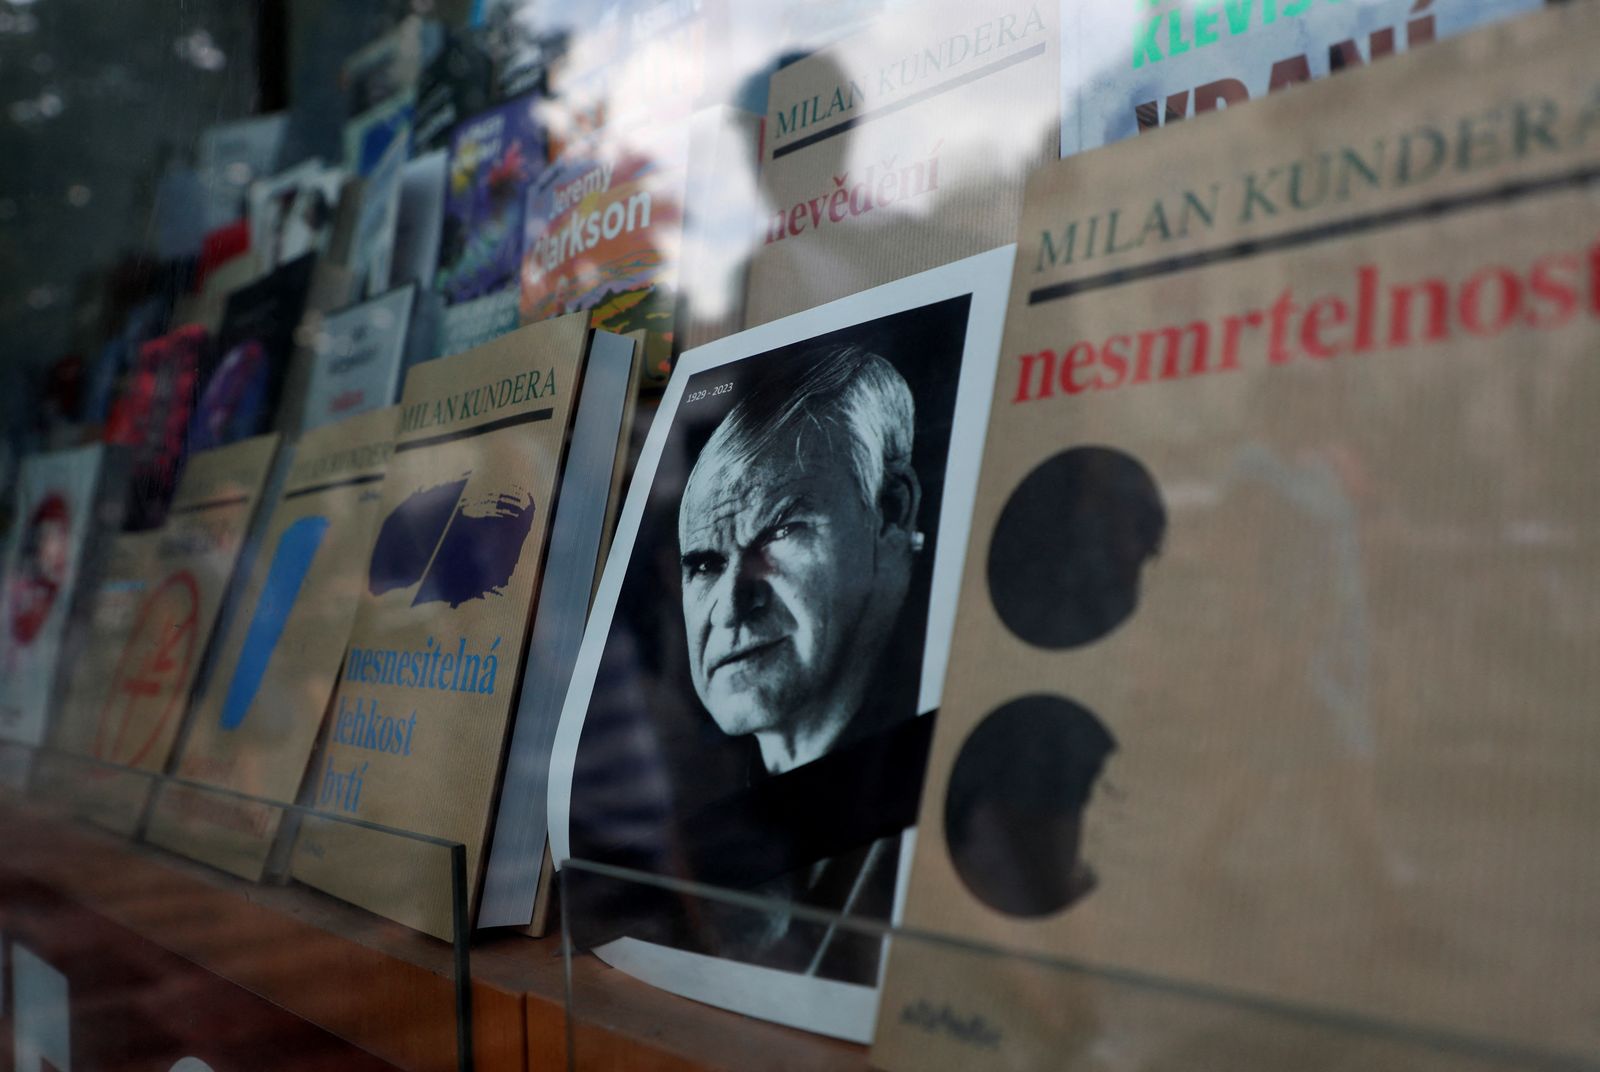 صورة ميلان كونديرا شوهدت بين كتبه في نافذة متجر في براغ ، جمهورية التشيك. 12 يوليو  2023 - REUTERS